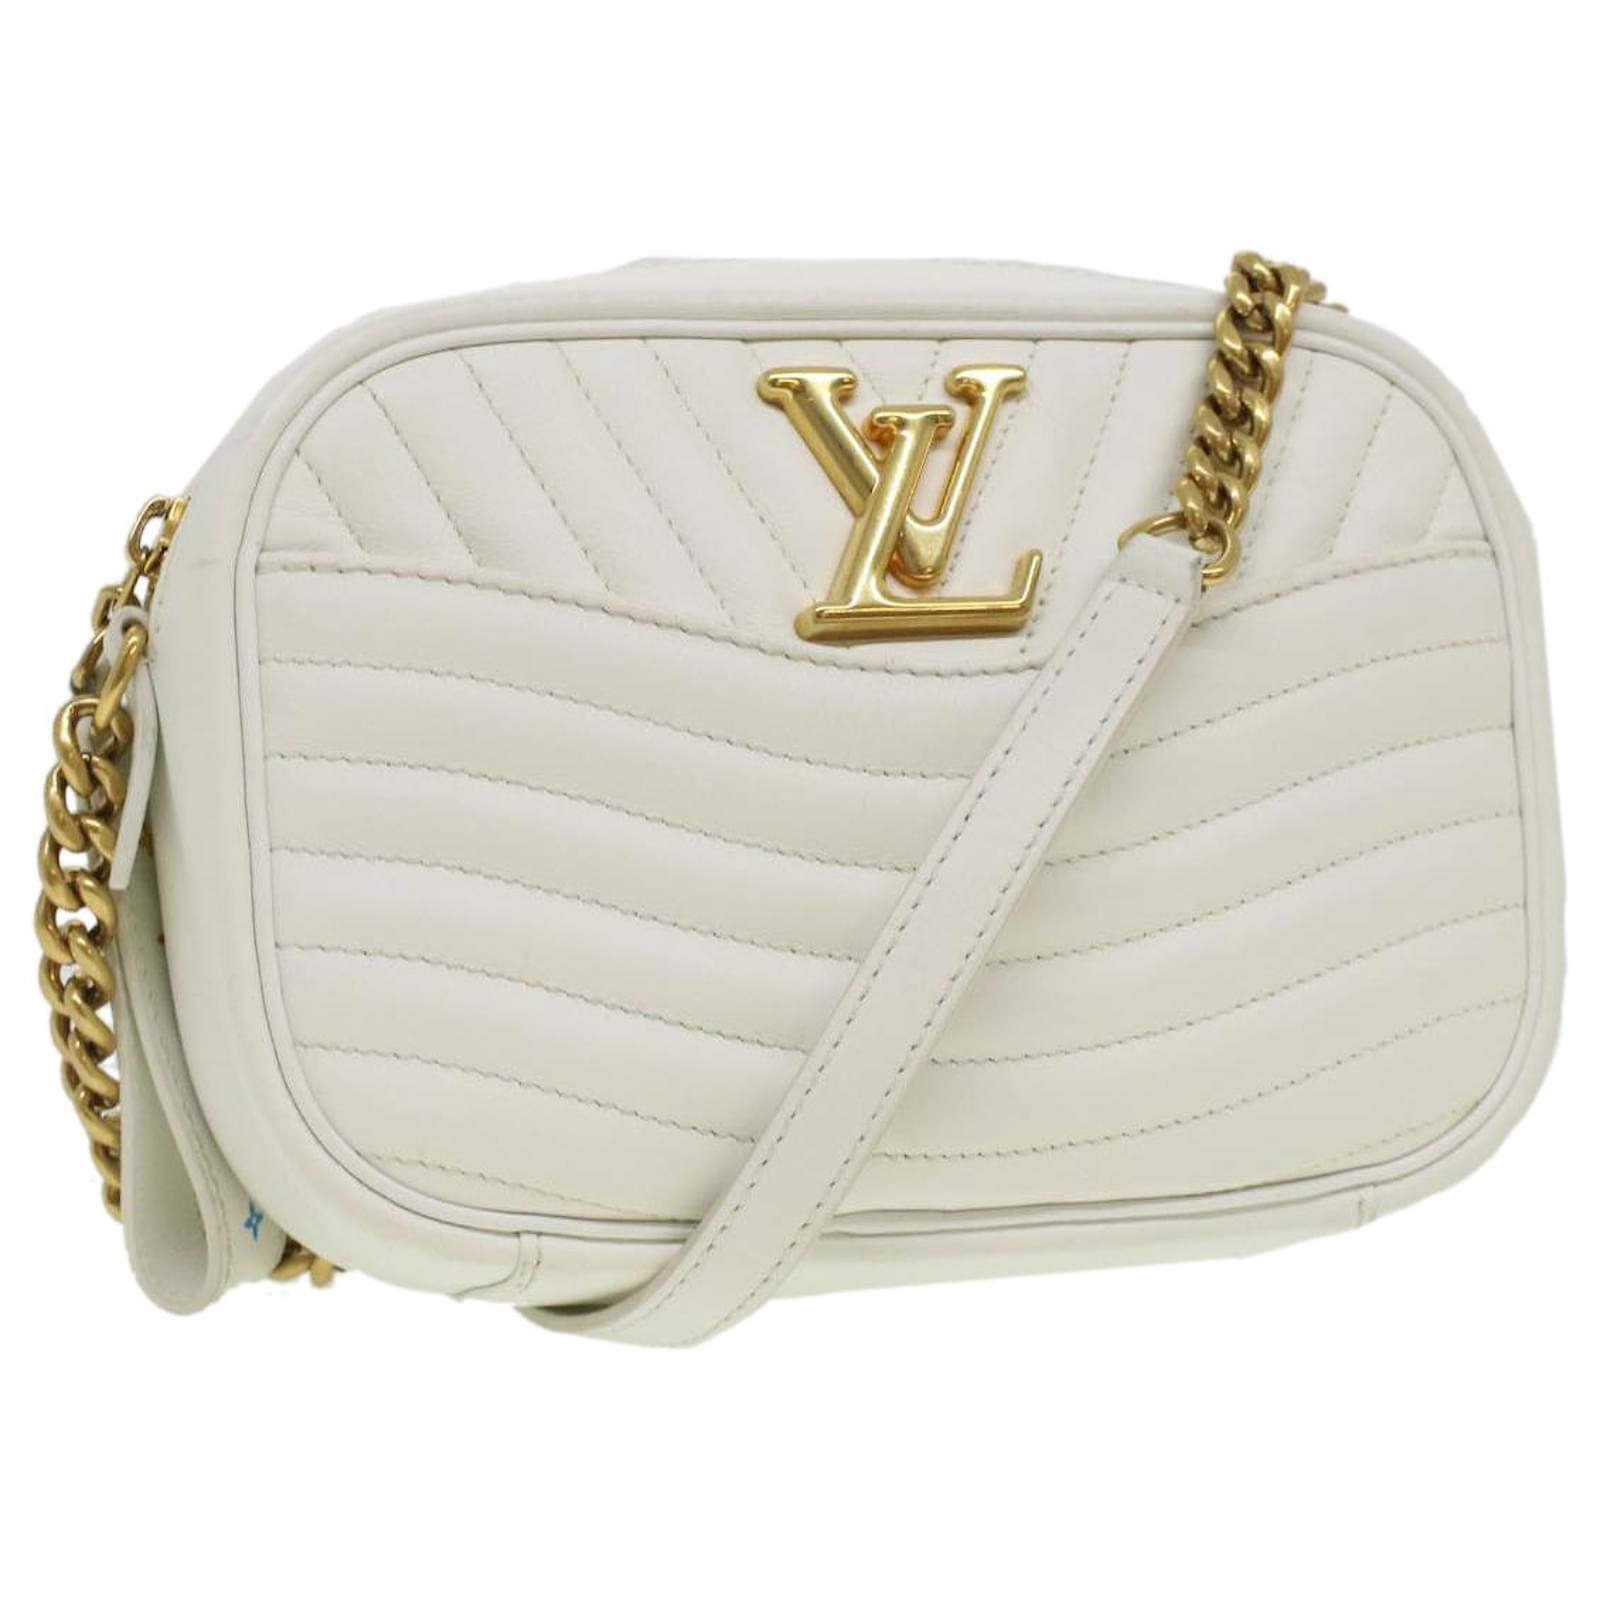 Louis Vuitton Camera Bag